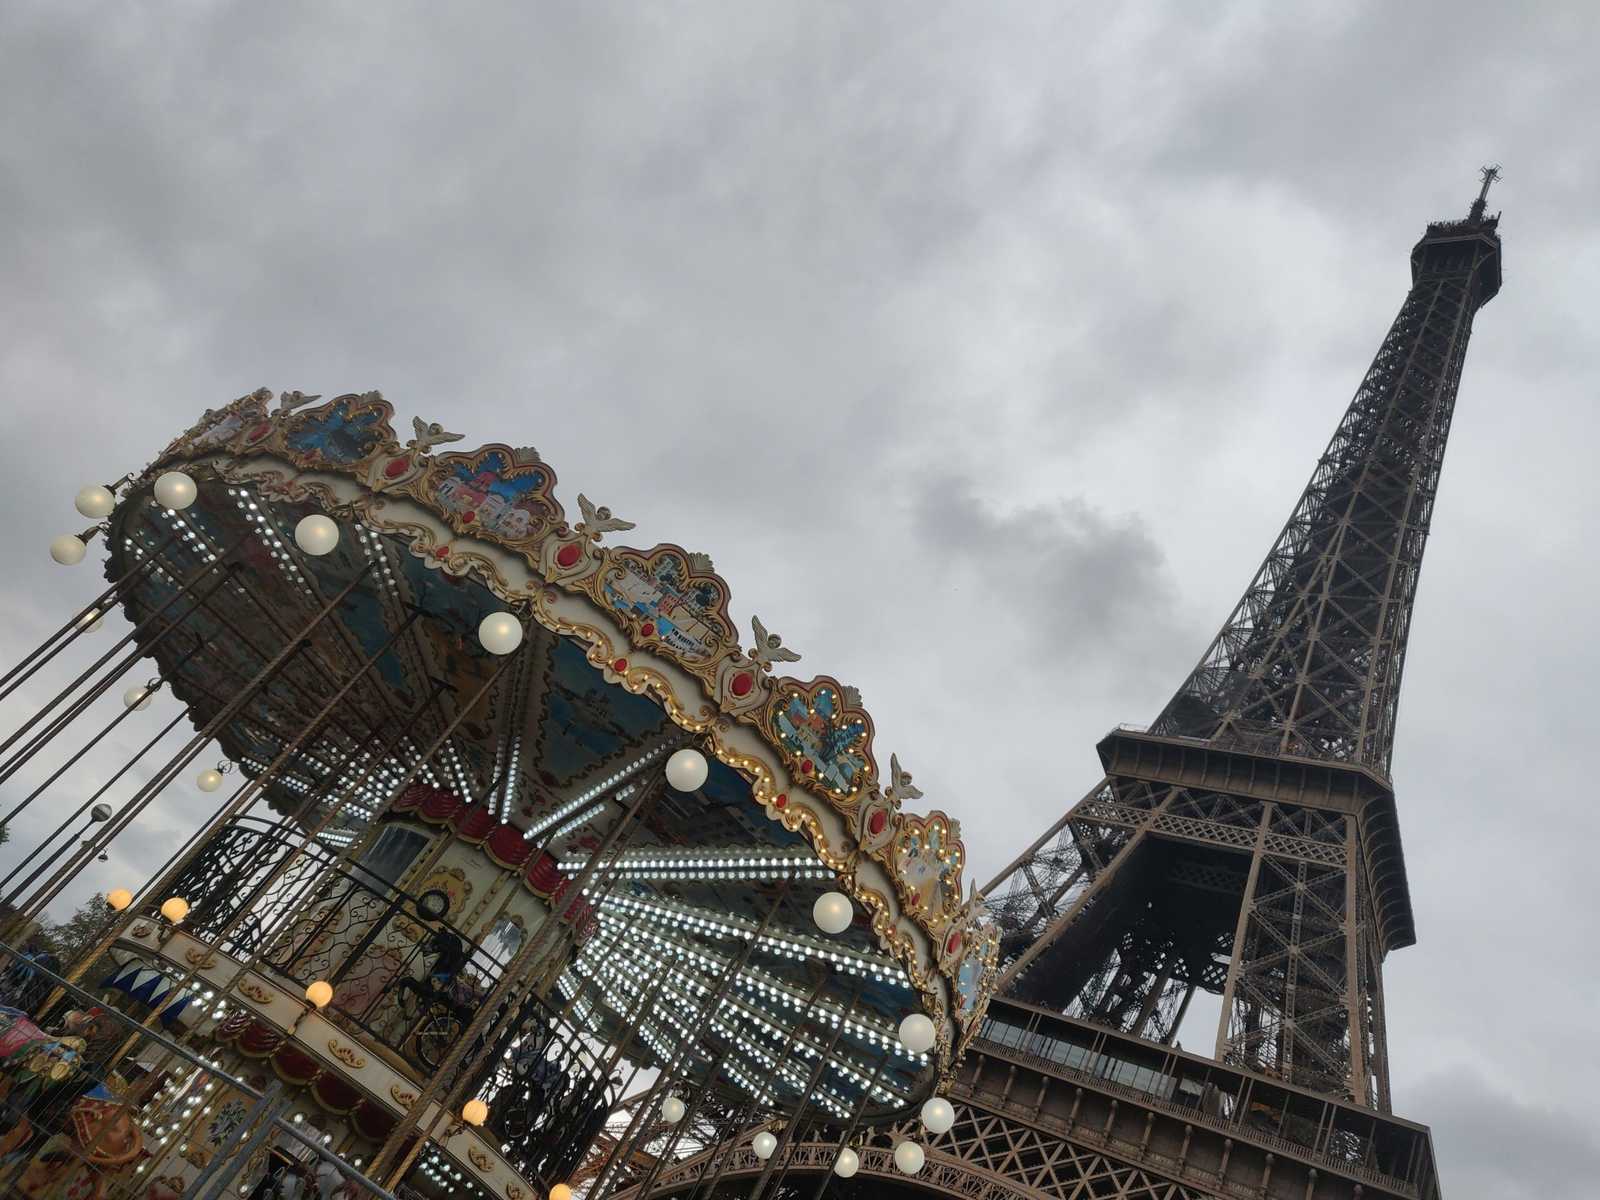 Kinder Karussel am Eiffelturm von paris, Sehenswürdigkeit,Städtereisen, urbane Kultur, Baukultur, Urbanität, stark urbanisiert, Wahrzeichen Frankreich Grand-Paris Paris Zentrum